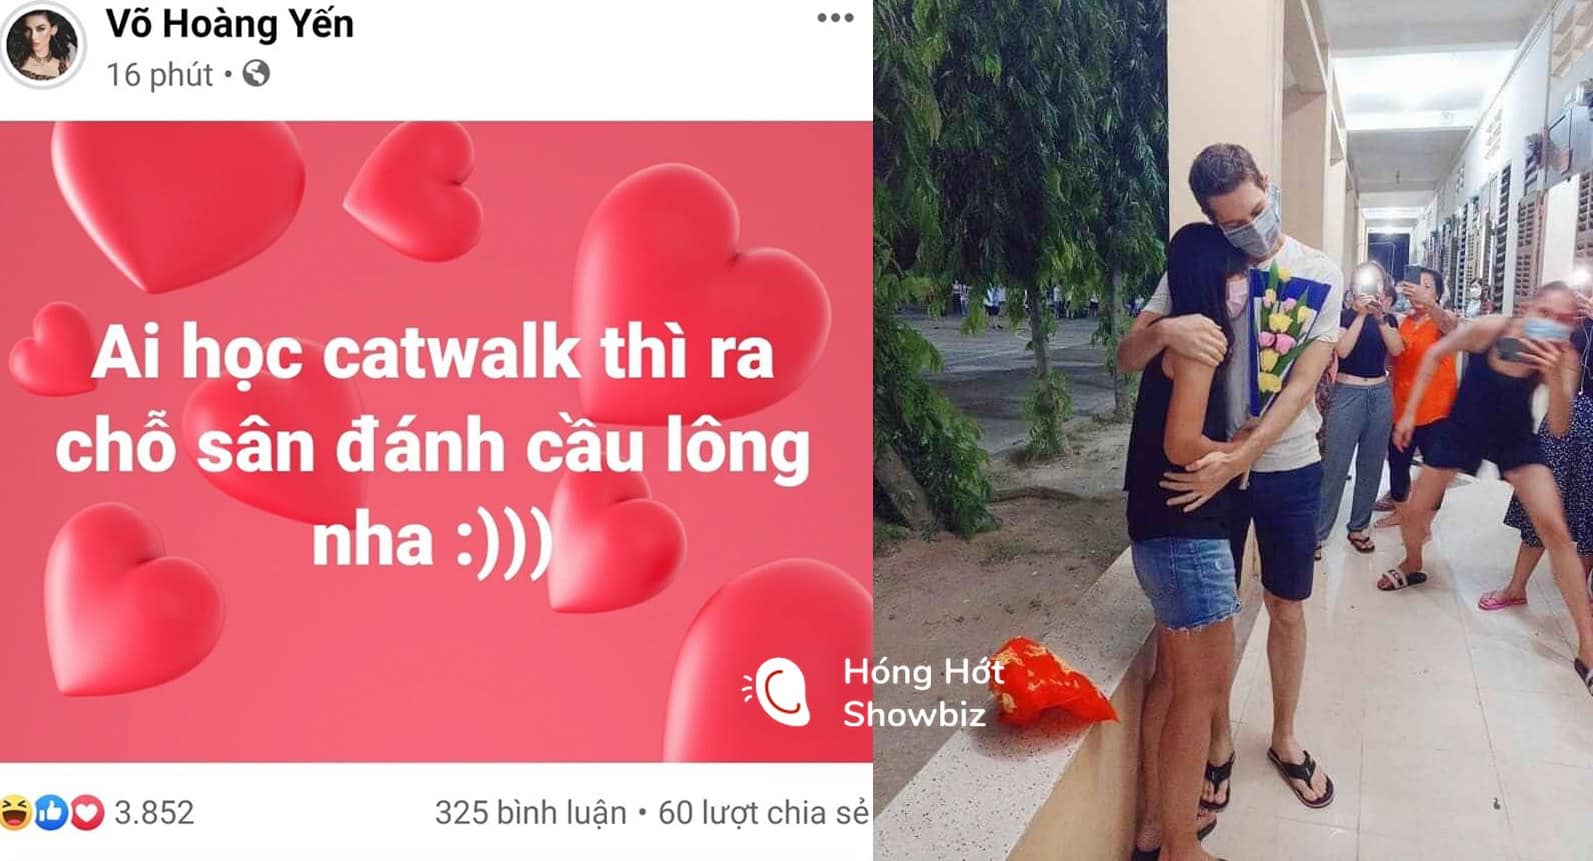 Cảnh siêu mẫu Võ Hoàng Yến hóng hớt một cặp đôi tỏ tình ở điểm cách ly bất ngờ viral khắp chốn vì quá hài